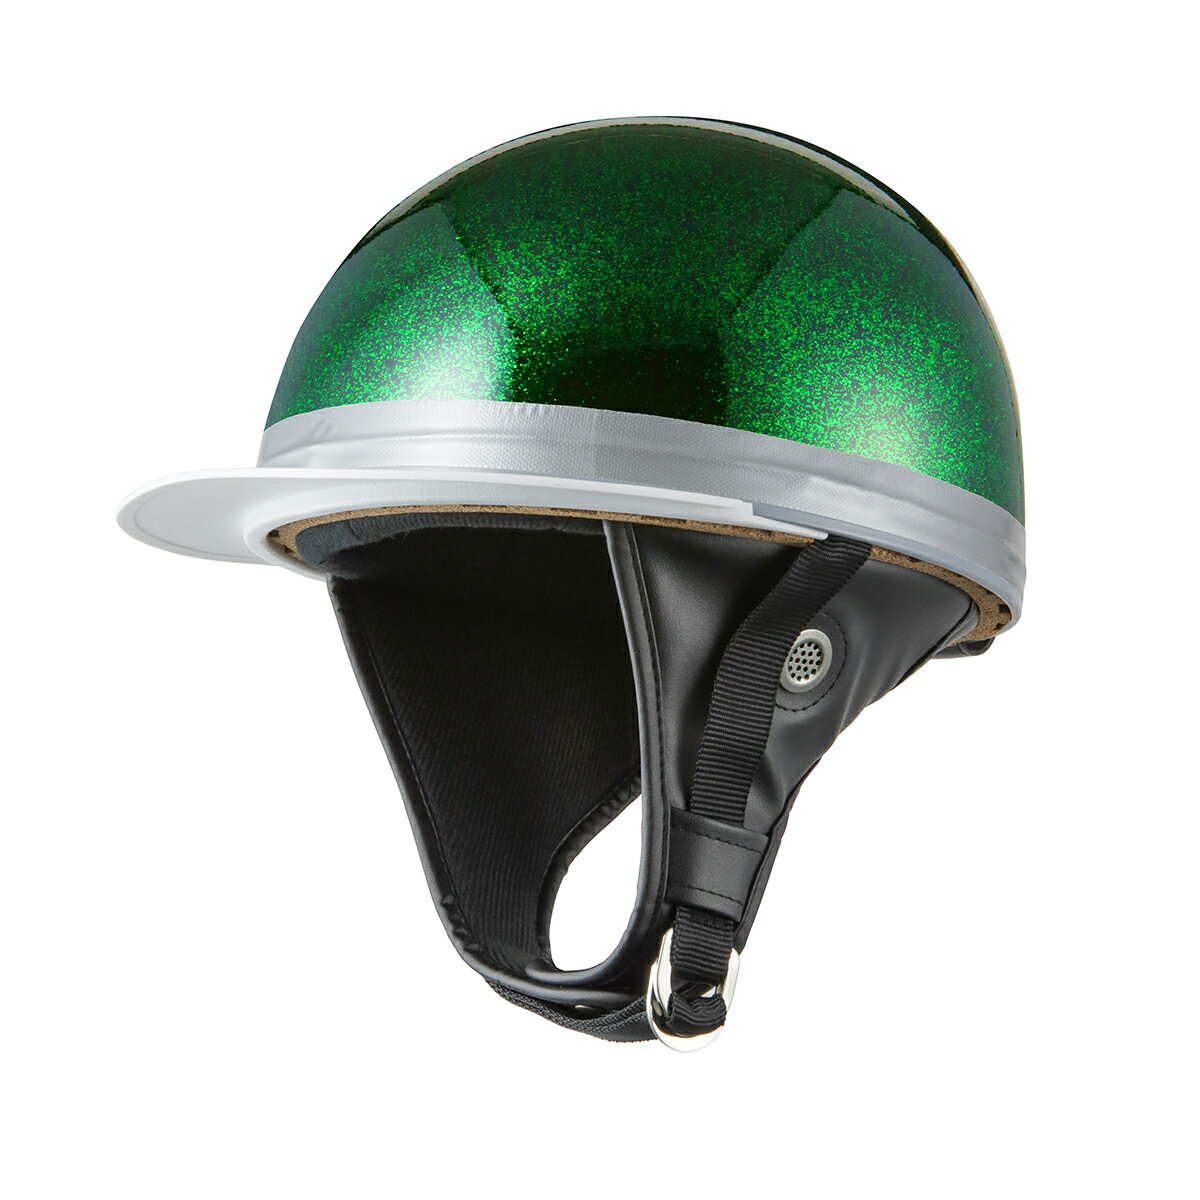 バイクヘルメット コルク半キャップ 濃緑 ダークグリーンラメ 濃緑ラメ 三つボタン フリーサイズ 124cc以下 SG規格適…